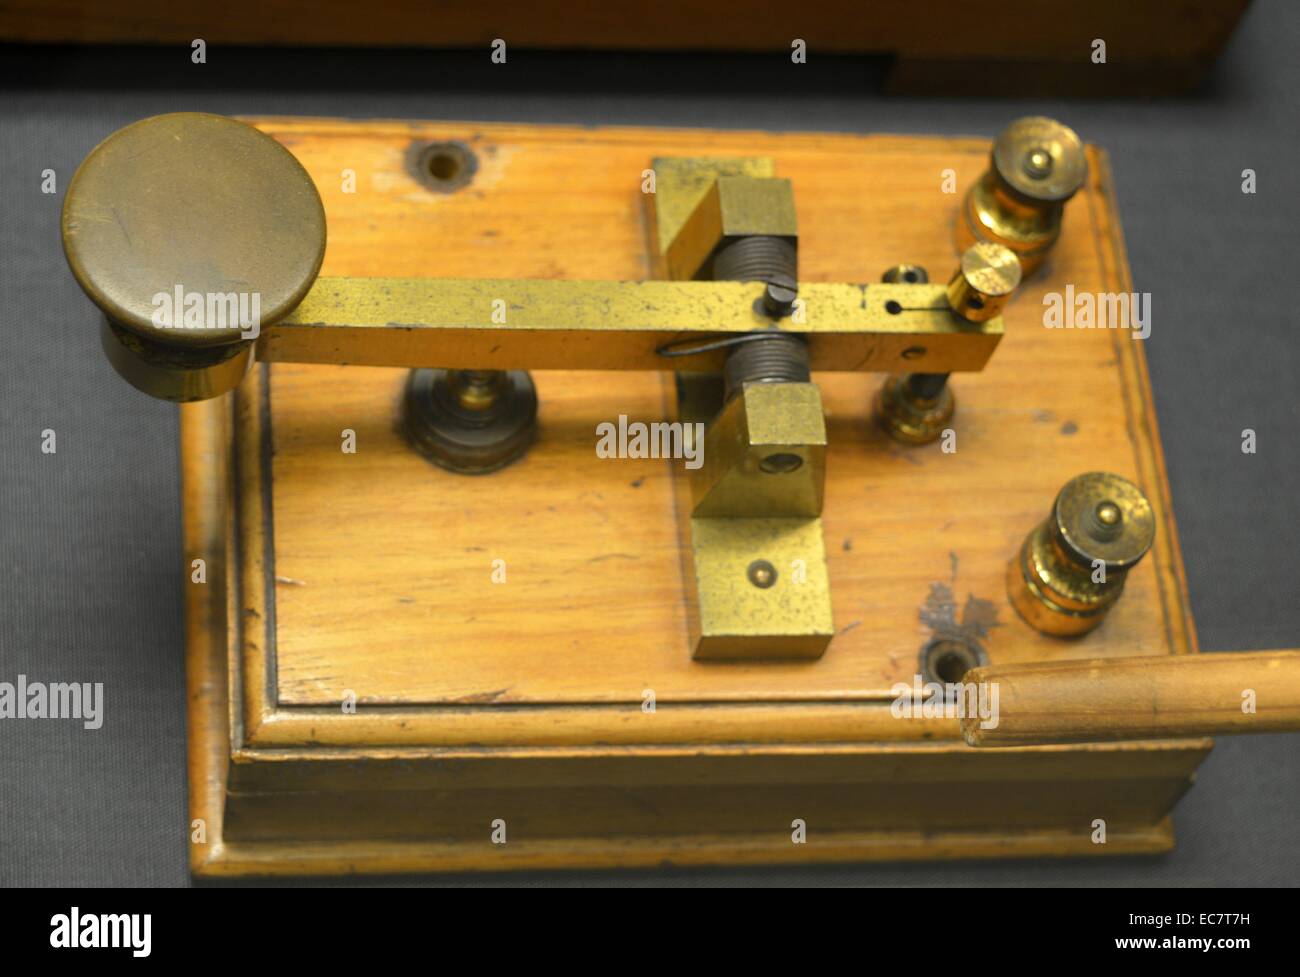 Morsetaste, c 1900. Dieser Schlüssel wurde von Marconi während seiner Experimente auf feinabgestimmte Schaltkreise am Haven Hotel, Poole in c1900 verwendet. Es war die erste Art der wichtigsten speziell für drahtlose Arbeiten konzipiert. Stockfoto